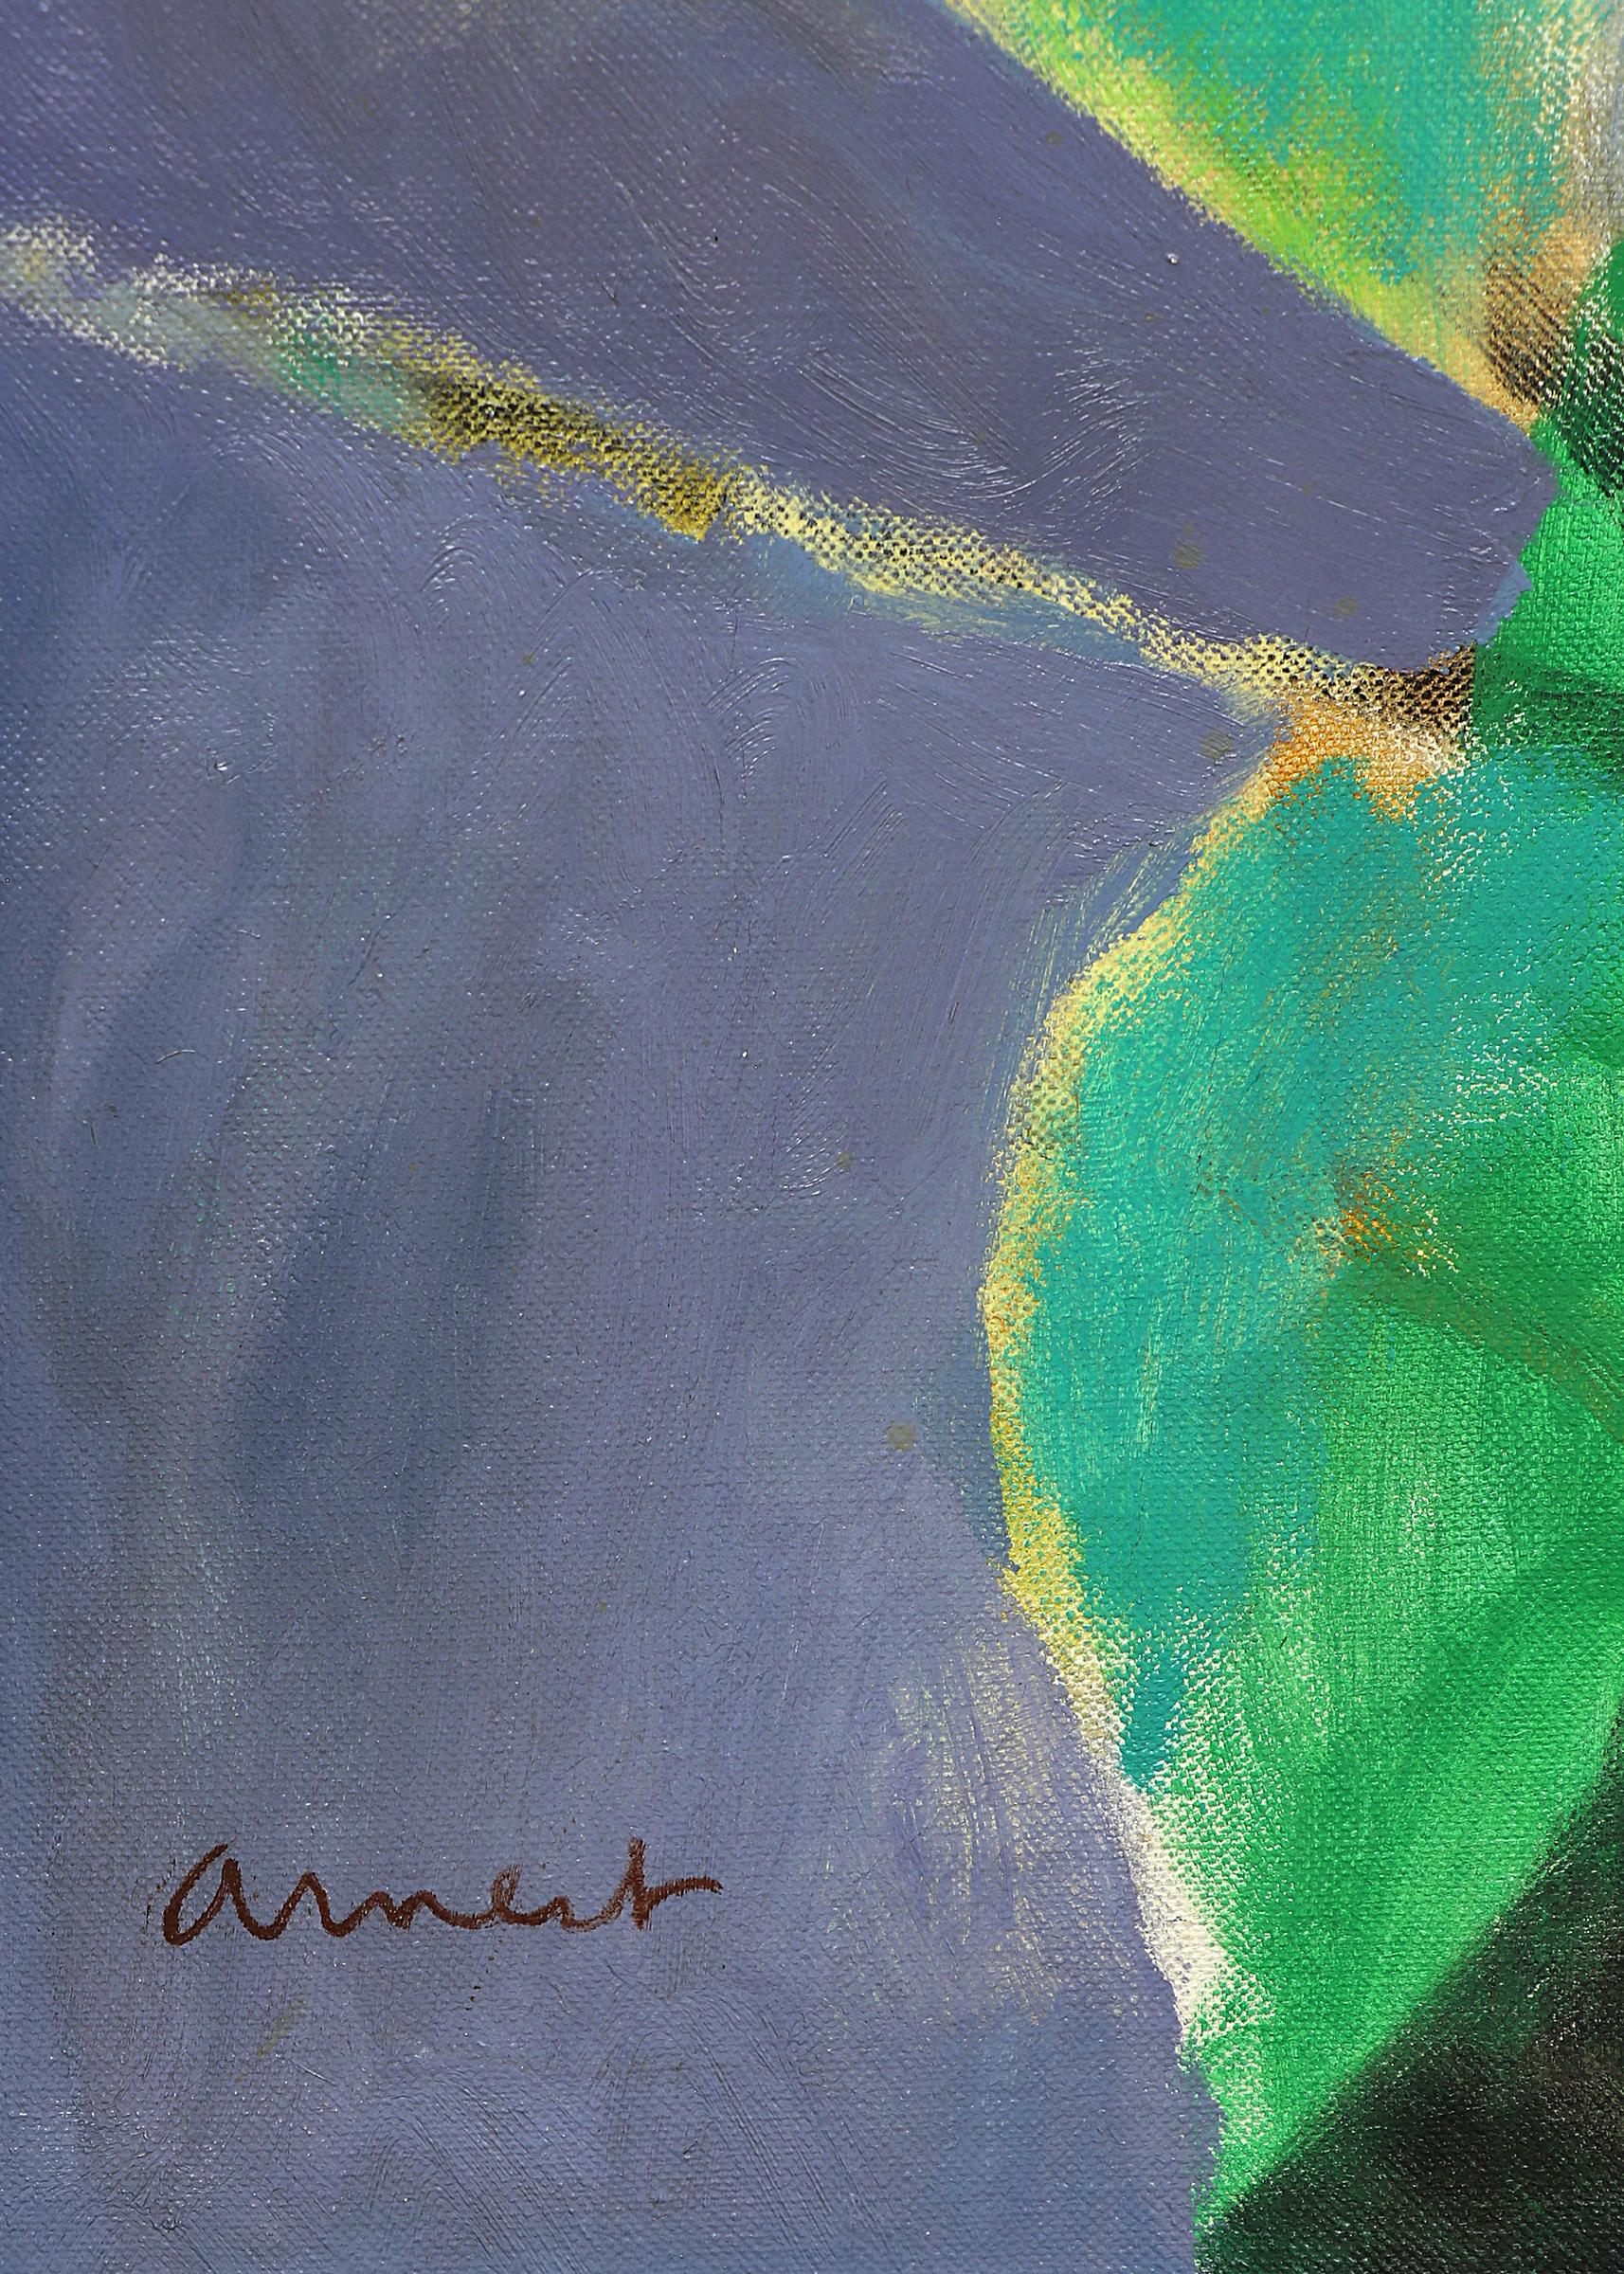 1950er Jahre Gerahmtes Abstraktes Stillleben Ölgemälde, Blau Grün Schwarz Orange Weiß (Grau), Abstract Painting, von Bernard Arnest